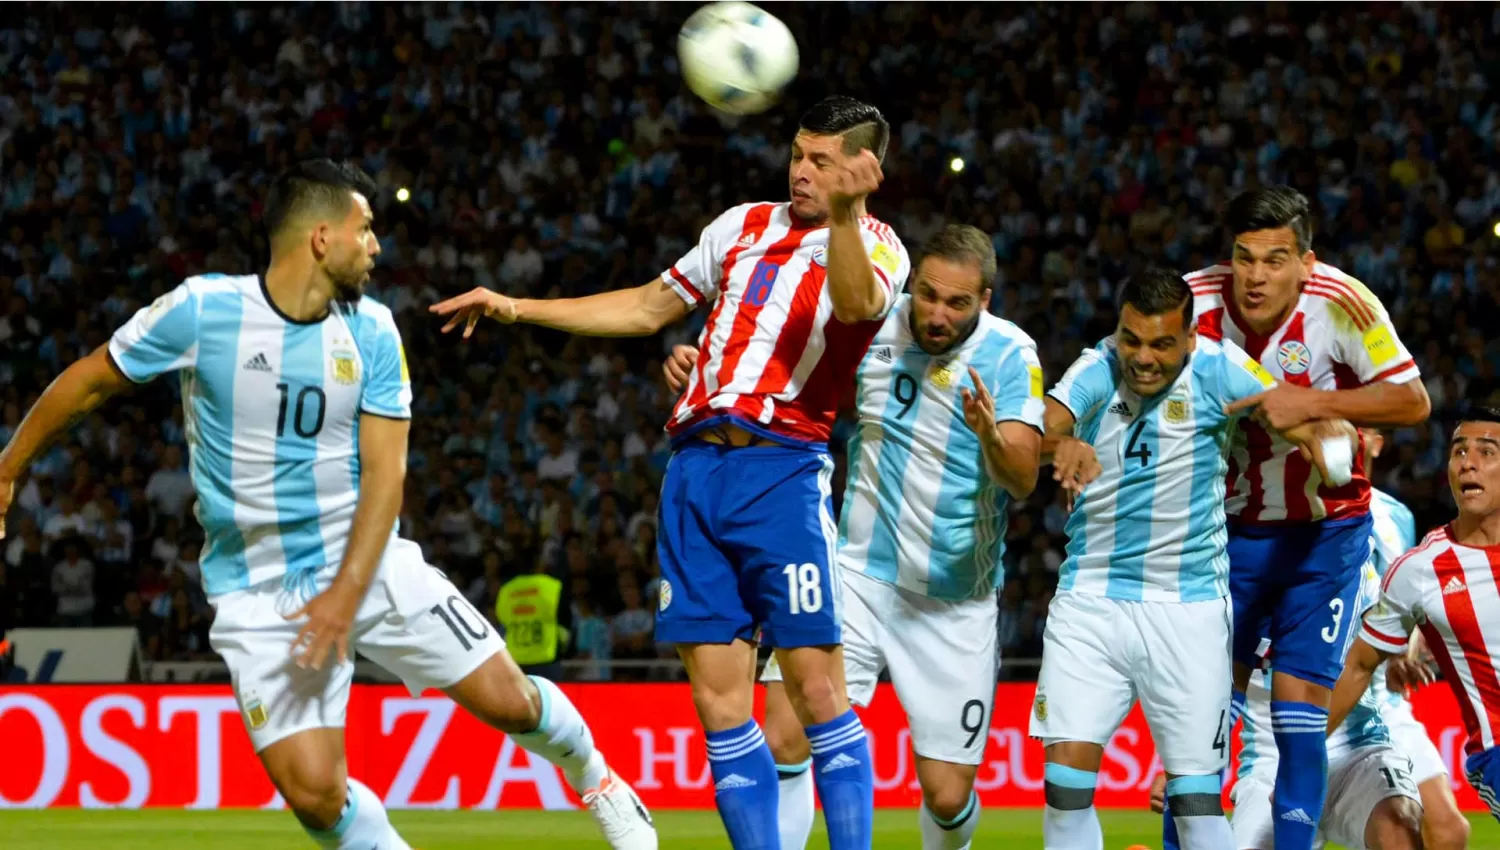 ANTECEDENTE. El último cruce entre los seleccionados de la Argentina y de Paraguay por las Eliminatorias sudamericanas, previo al Mundial de Rusia 2018, favoreció a los Guaraníes, por 1 a 0.